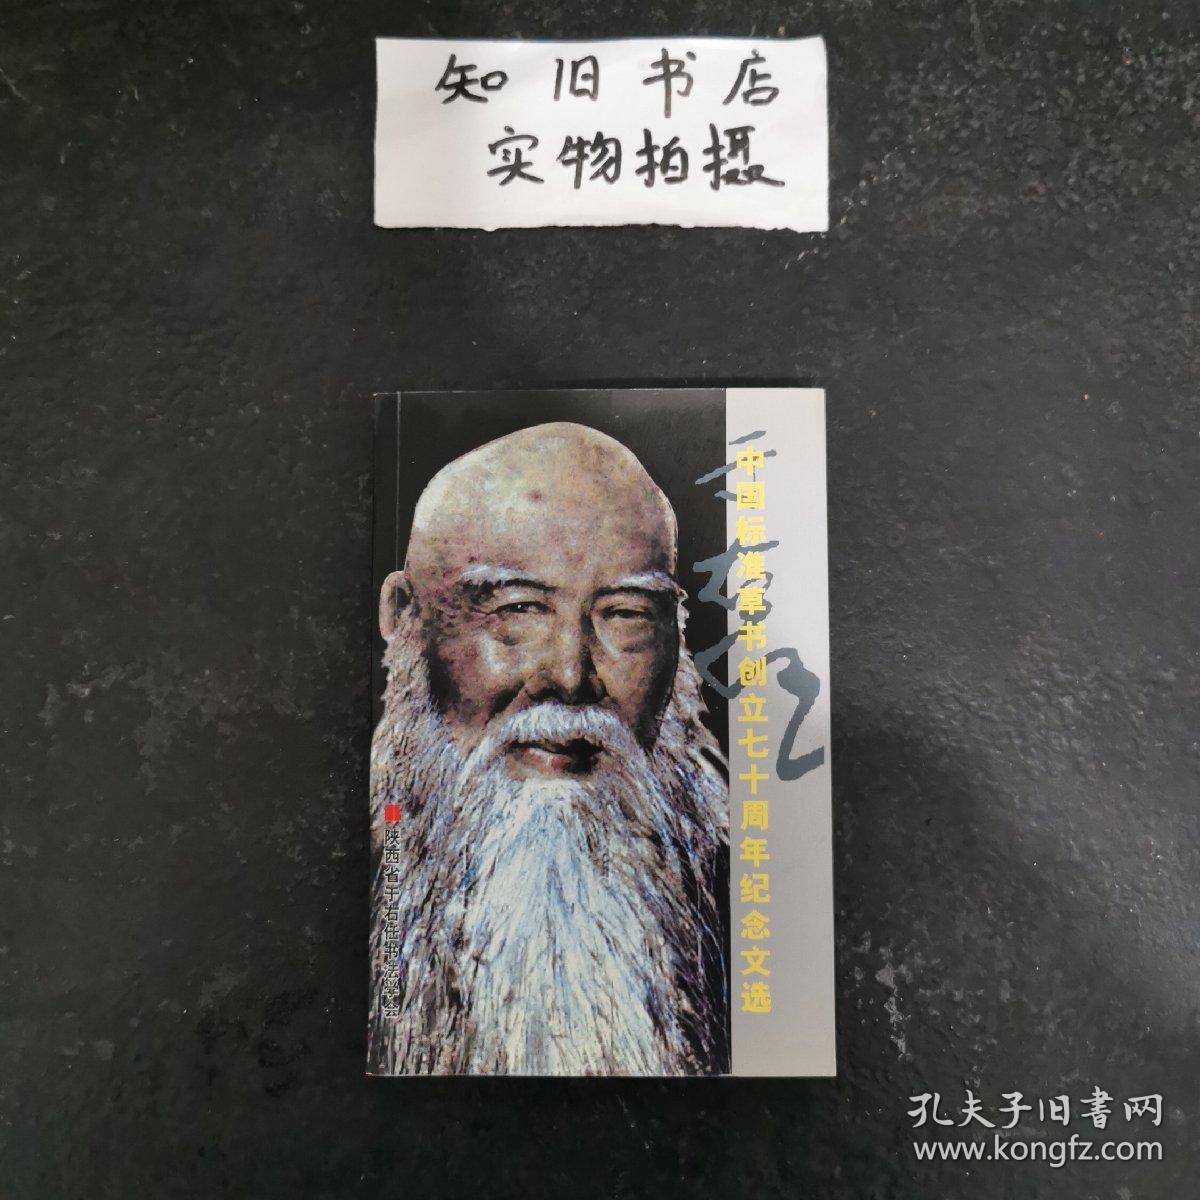 中国标准草书创立七十周年纪念文选